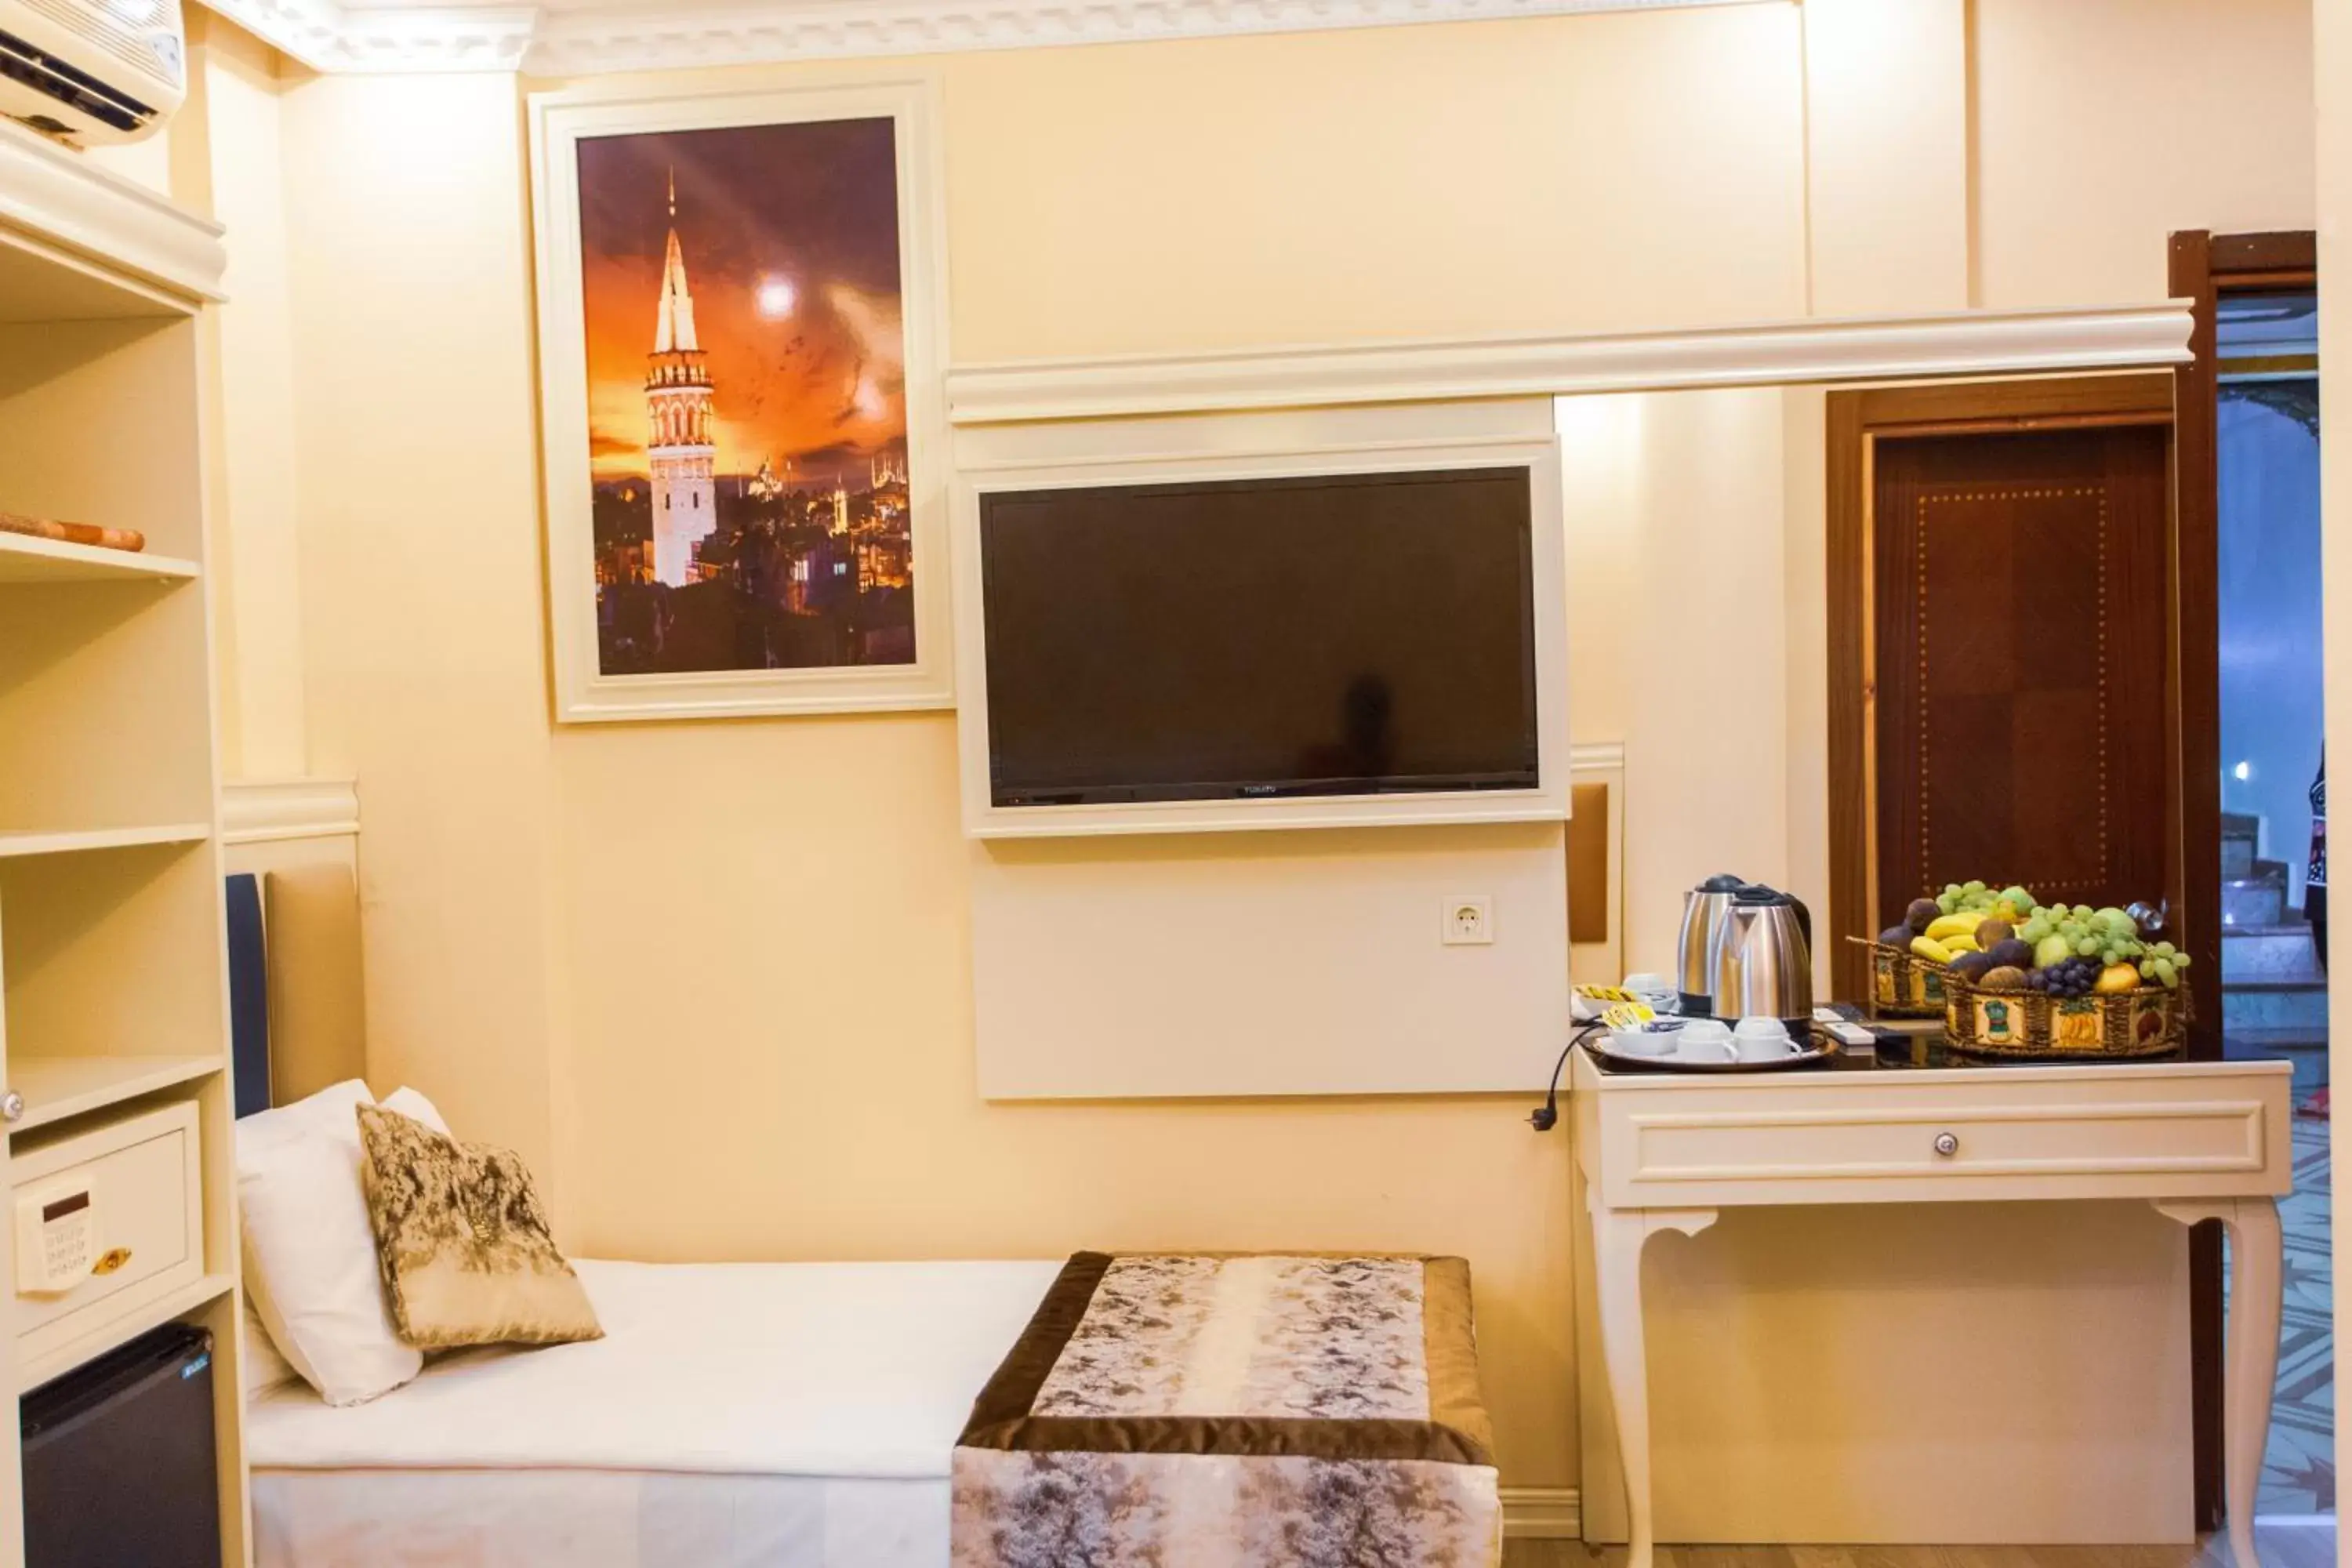 Bedroom, TV/Entertainment Center in Best Nobel Hotel